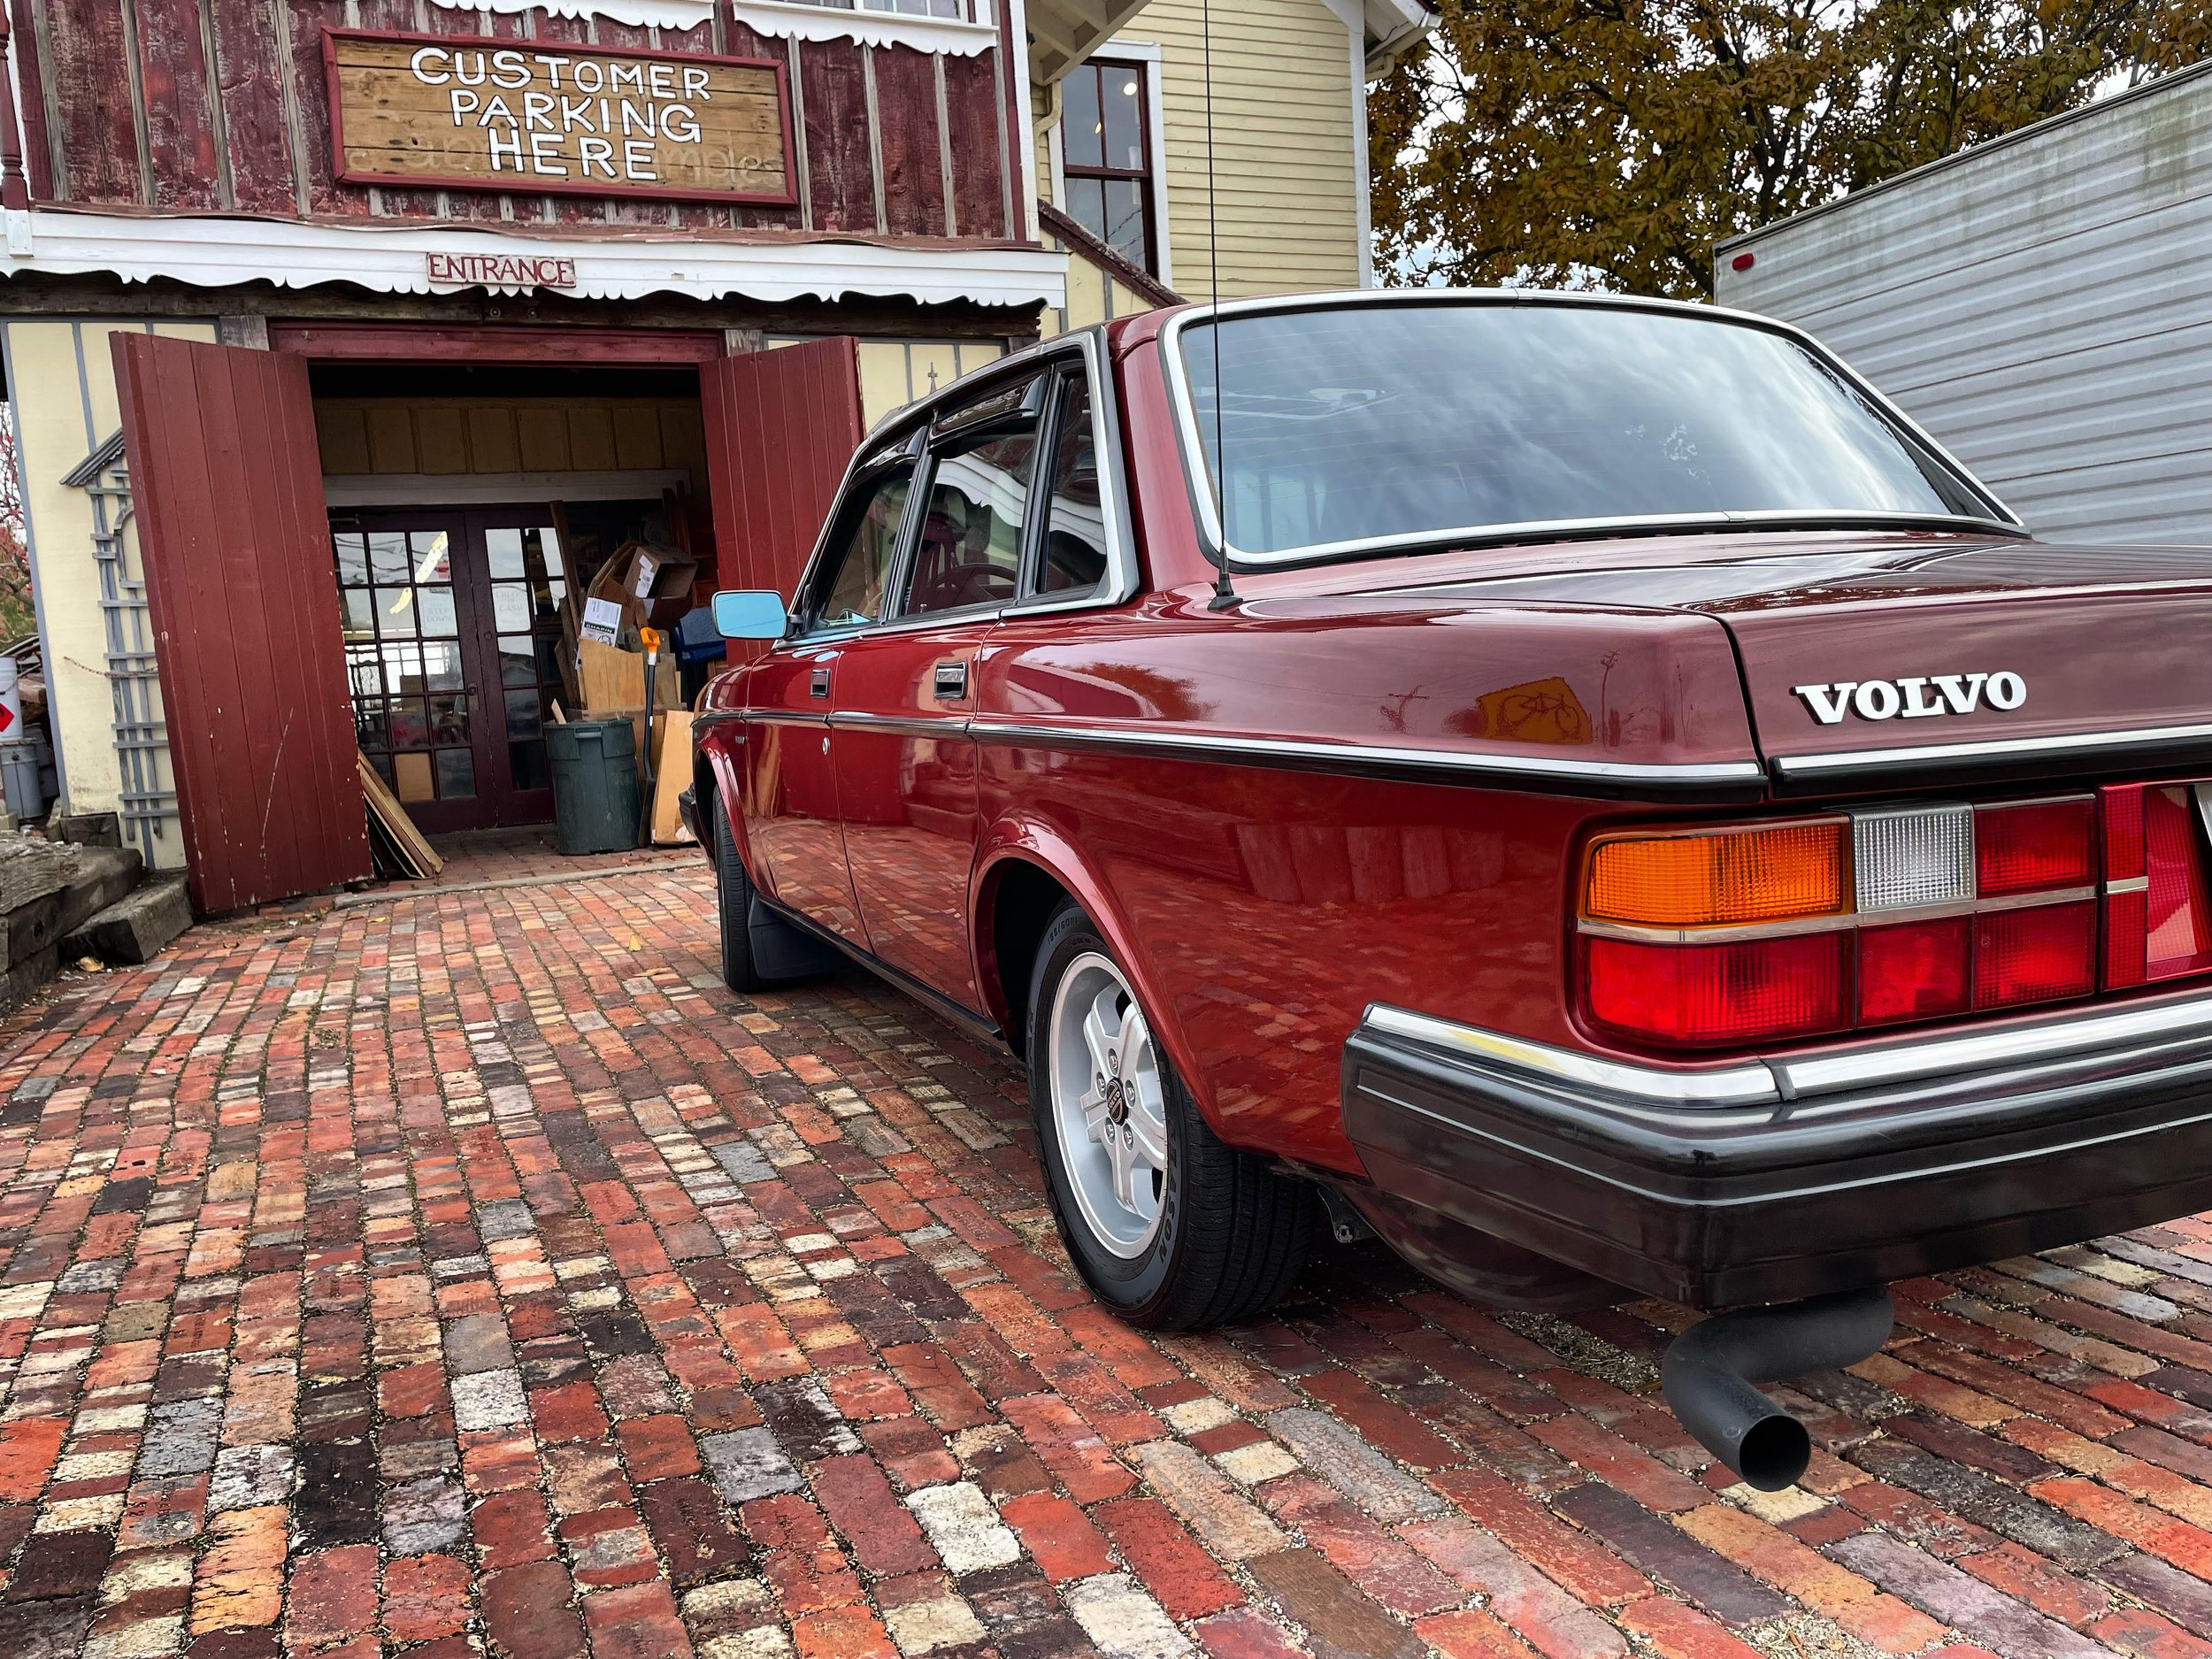 I Love My Volvo' Bumper Sticker — Auslander VLV Restoration & Accessories